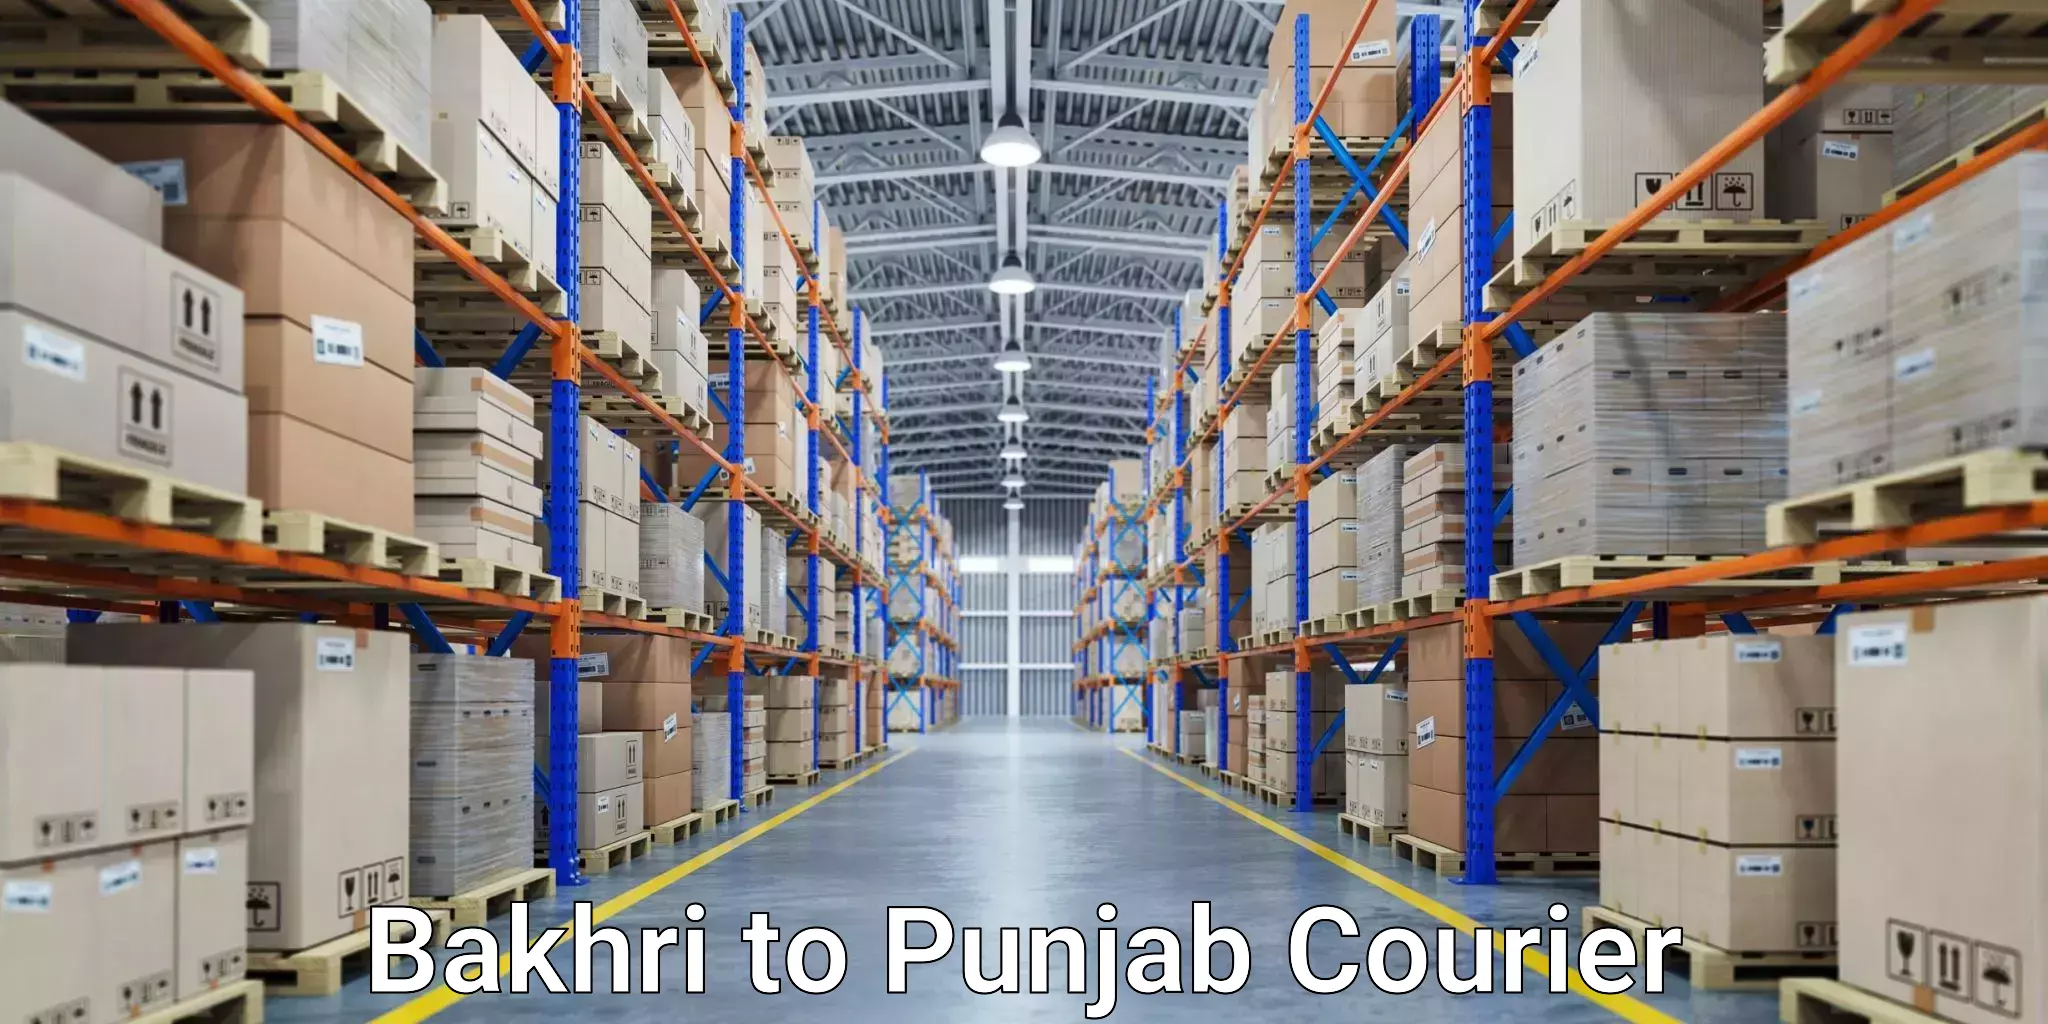 Global shipping networks Bakhri to Central University of Punjab Bathinda